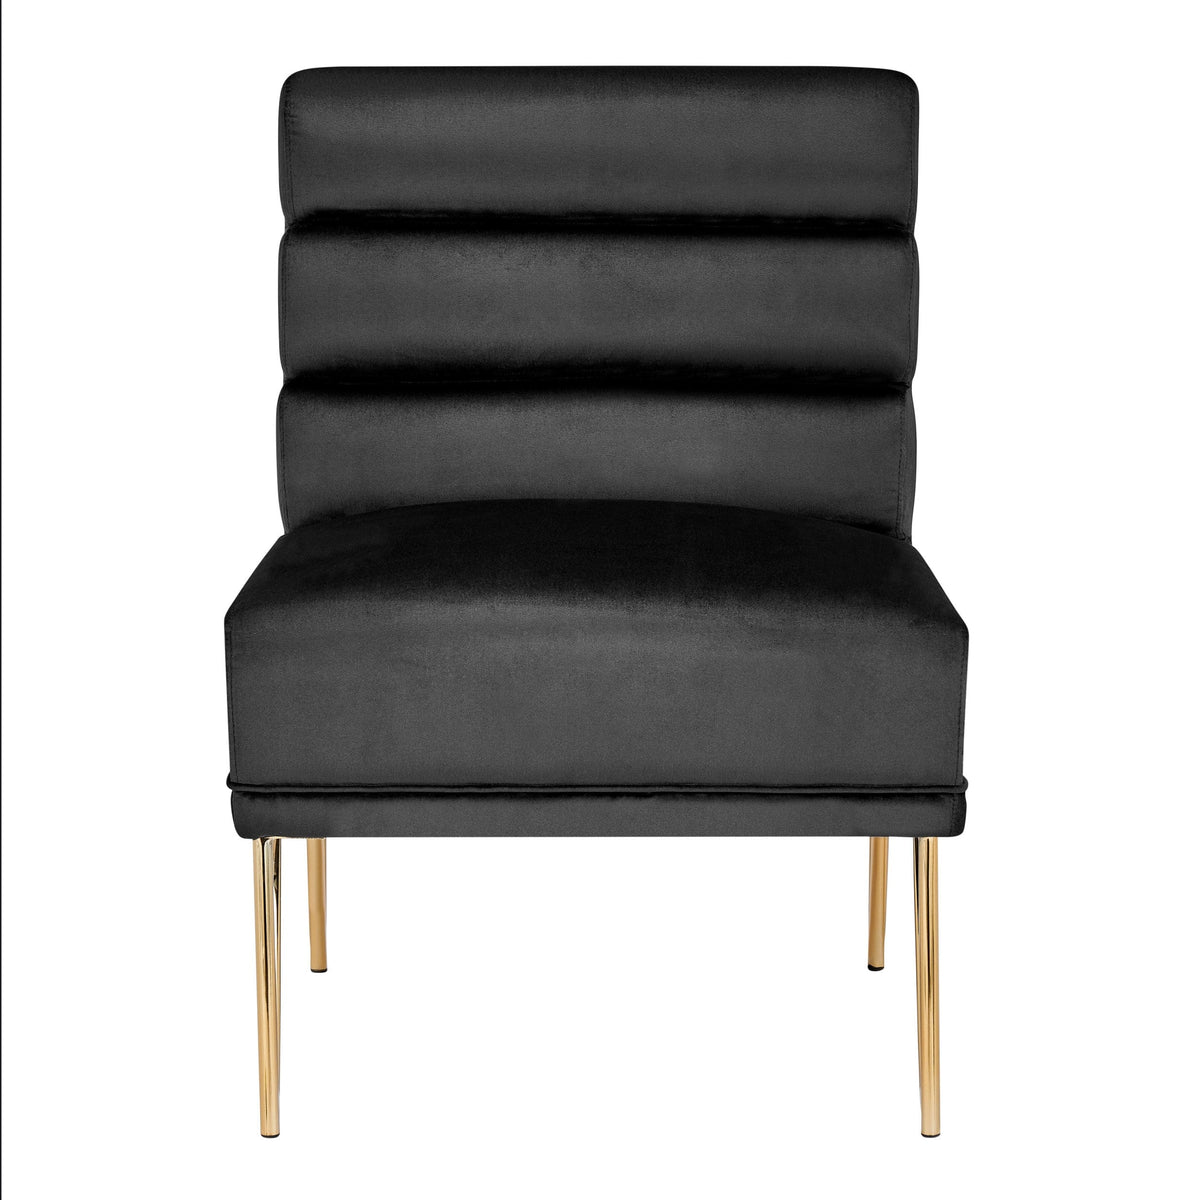 Iconic Home Cali Velvet Slipper Accent Chair 